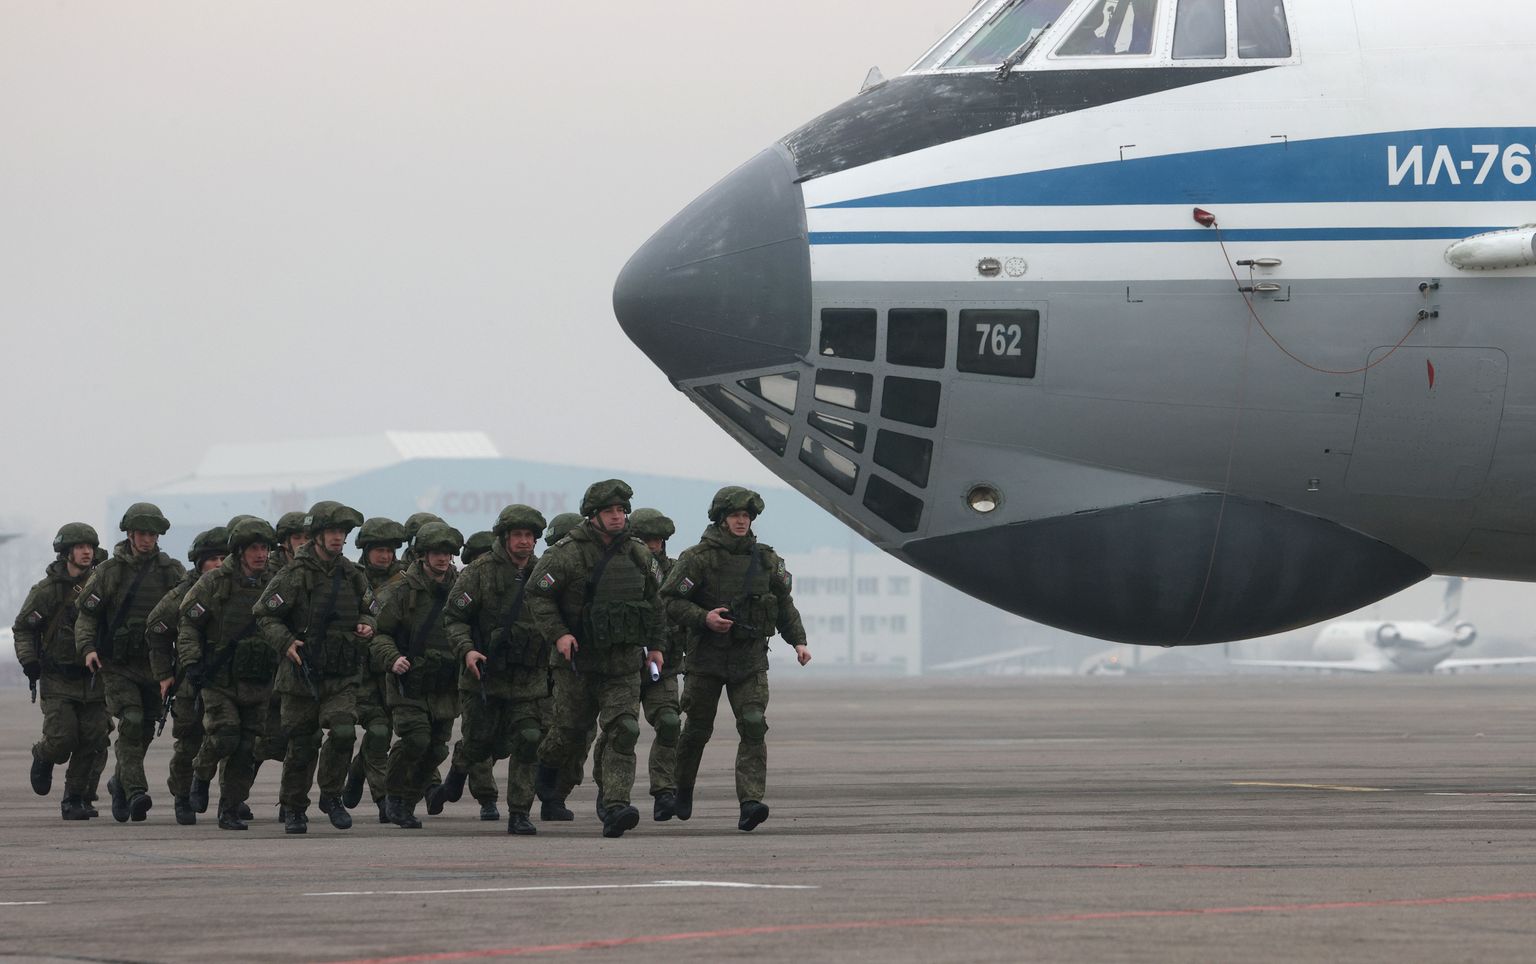 Российские десантники загружаются в военно-транспортный самолет Ил-76 в международном аэропорту Алматы, после участия в операции по подавлению беспорядков в Казахстане в начале 2022 года. Точно такие же самолеты базируются на аэродроме в городе Псков, где расположена 76-ая дивизия ВДВ.